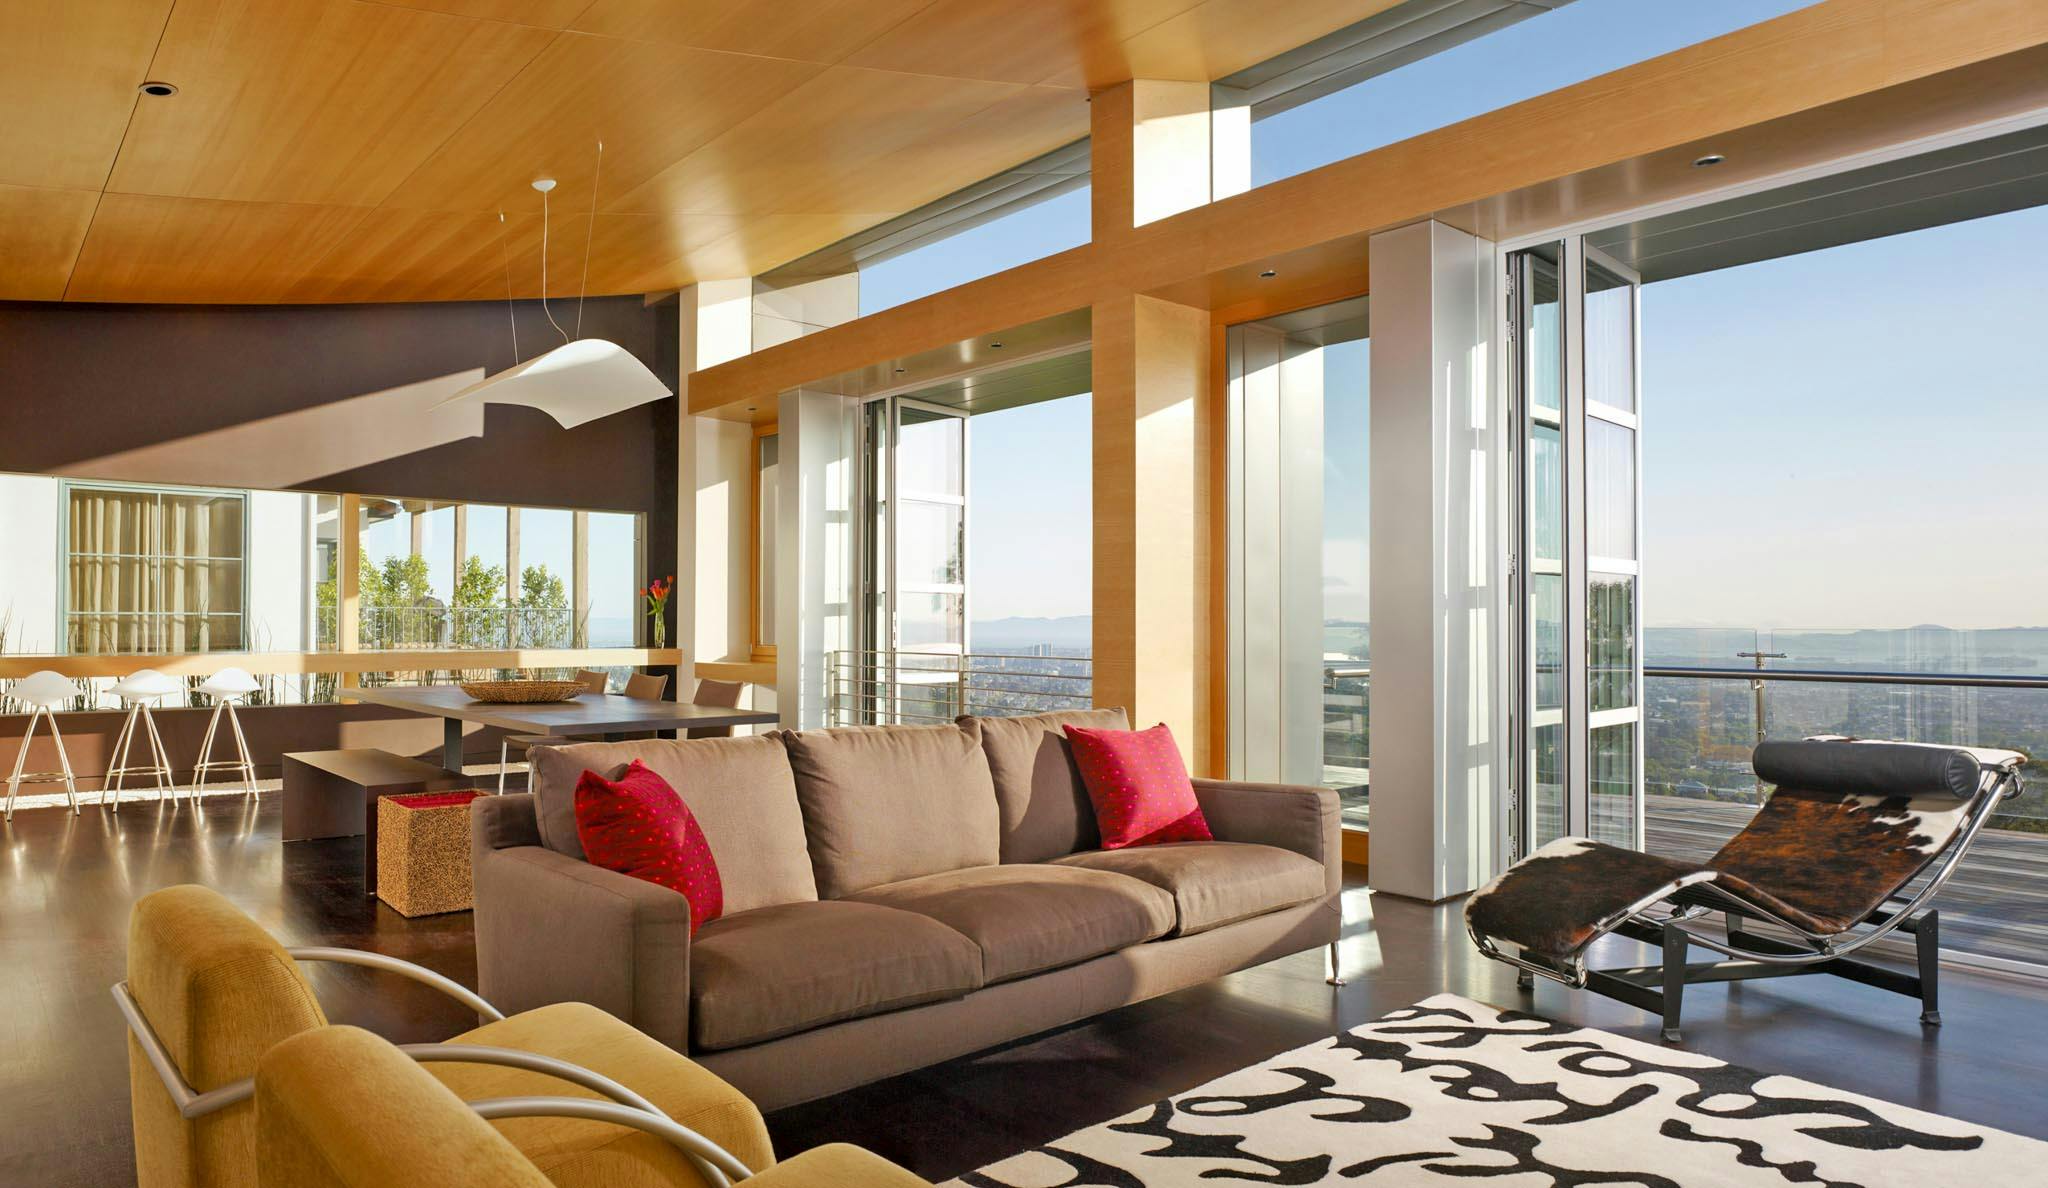 hillside modern home design inspiration with view through folding glass door